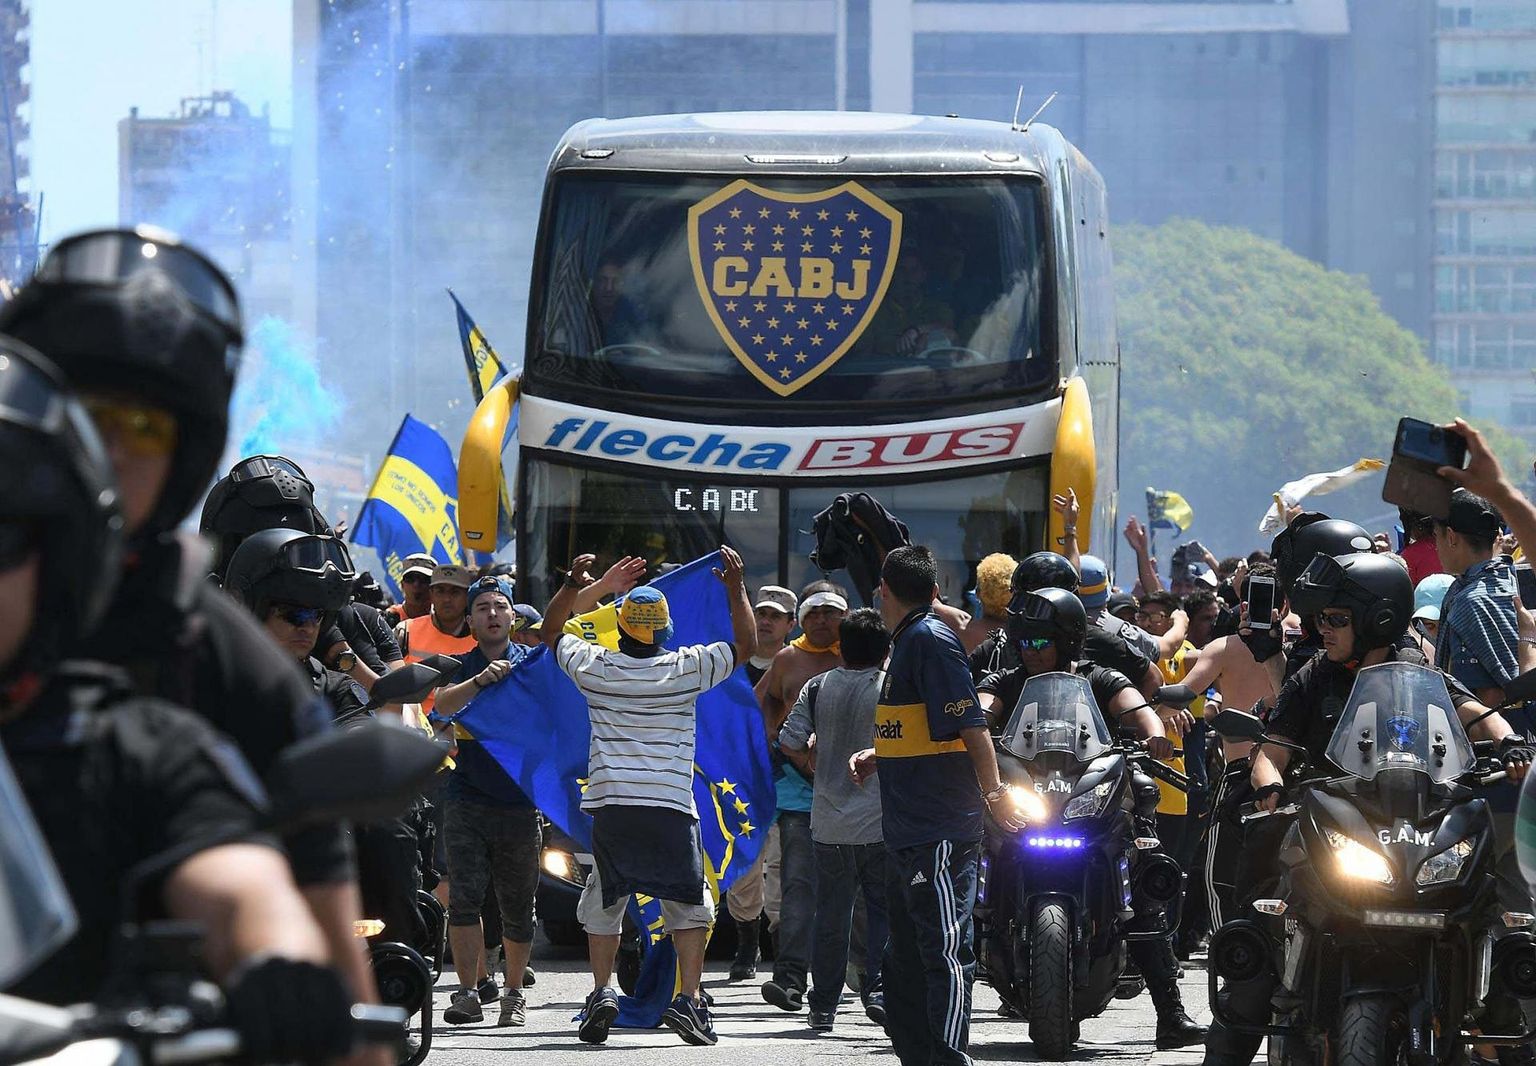 Boca Juniorsi meeskonna buss liigub läbi rahvamasside staadioni poole. 